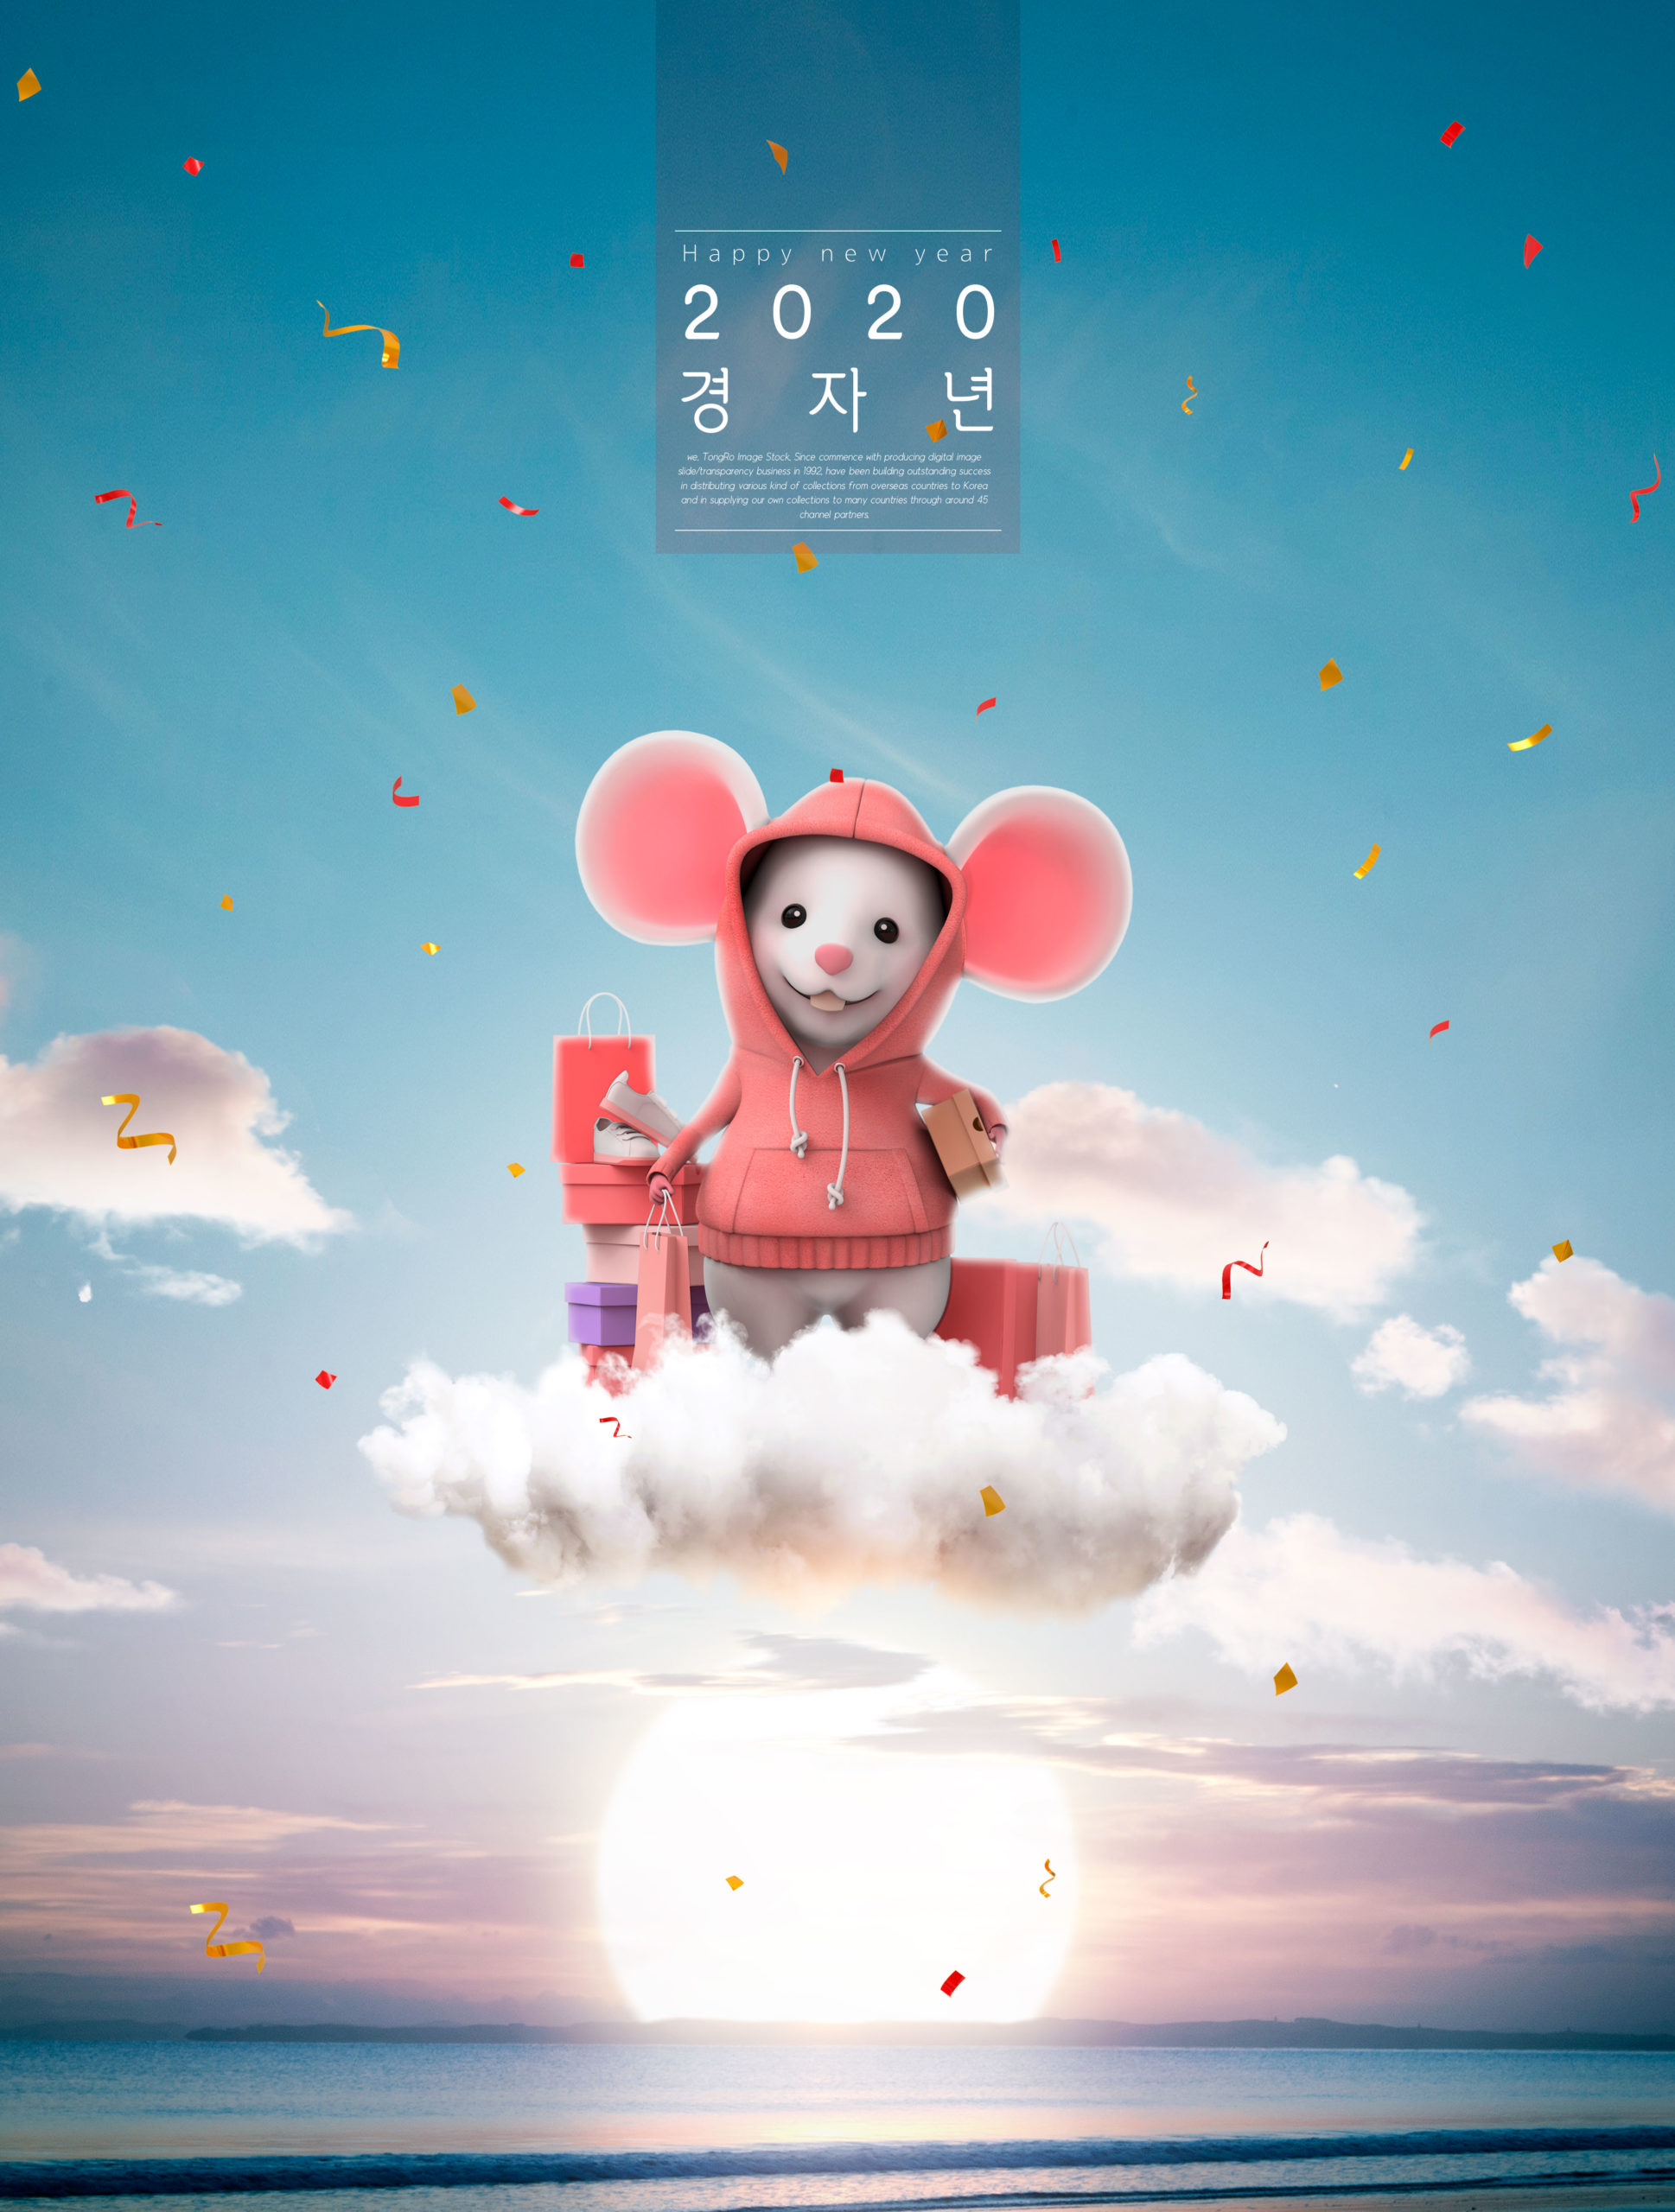 创意可爱的2020鼠年送礼祝福主题海报PSD素材第一素材精选模板插图